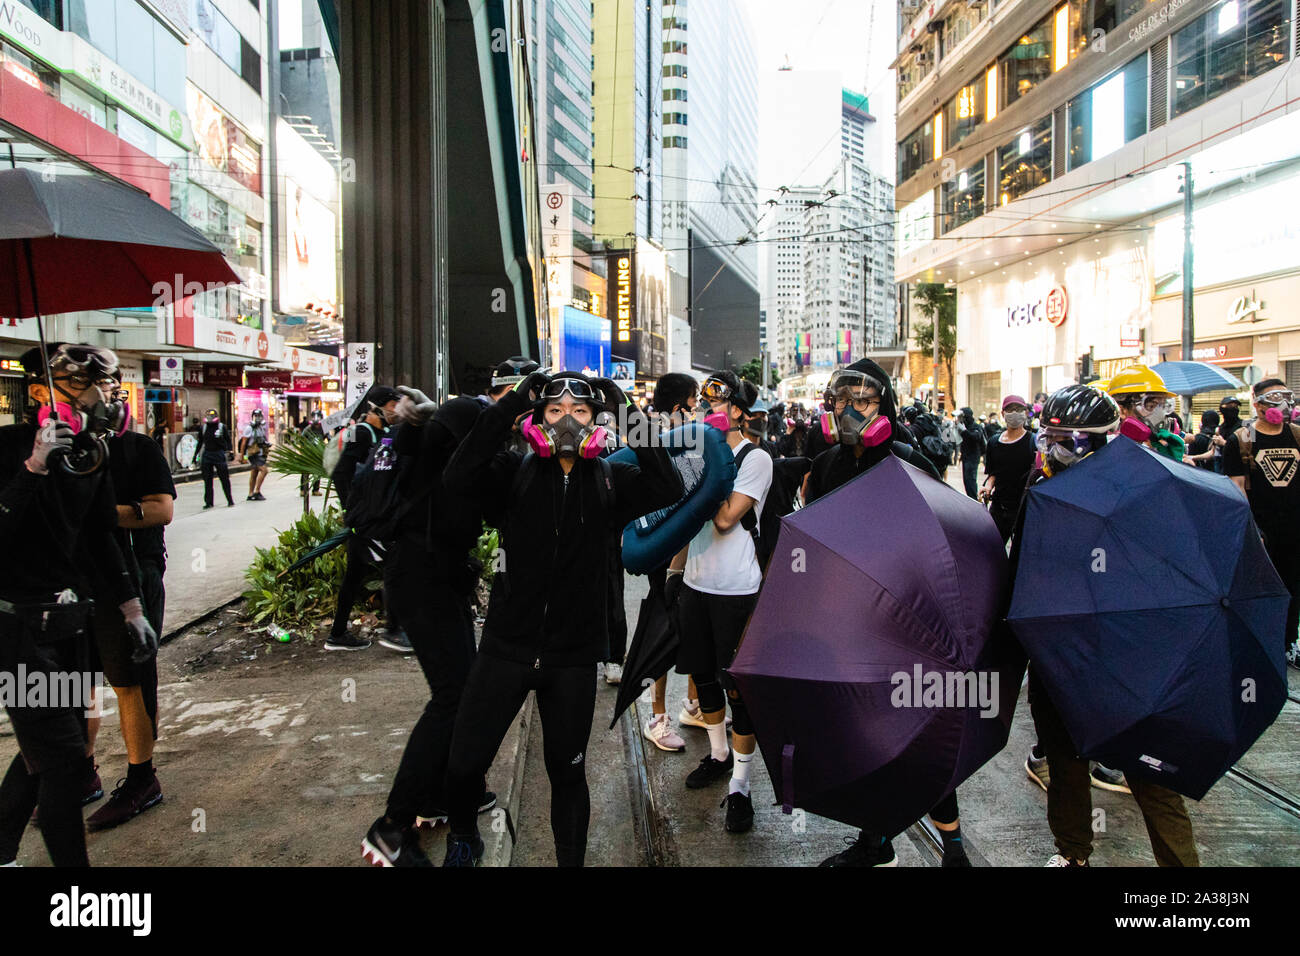 Eine Demonstrantin sieht die Polizei die Bewegung während der Demonstration. Eingabe der 18 Wochenende der Unruhen, Demonstranten marschierten im Regen nach einer Anti-mask Gesetz in einer Bemühung, Demonstrationen abzuhalten übergeben wurde. Die Demonstranten skandierten Parolen und fuhr fort zu Fragen für die fünf Forderungen erfüllt werden. Die Demonstranten zu Zusammenstößen zwischen Polizei und wurden mit Gas, Gummigeschossen getroffen, und einer Wasserkanone bis mehrere wurden schließlich verhaftet. Stockfoto